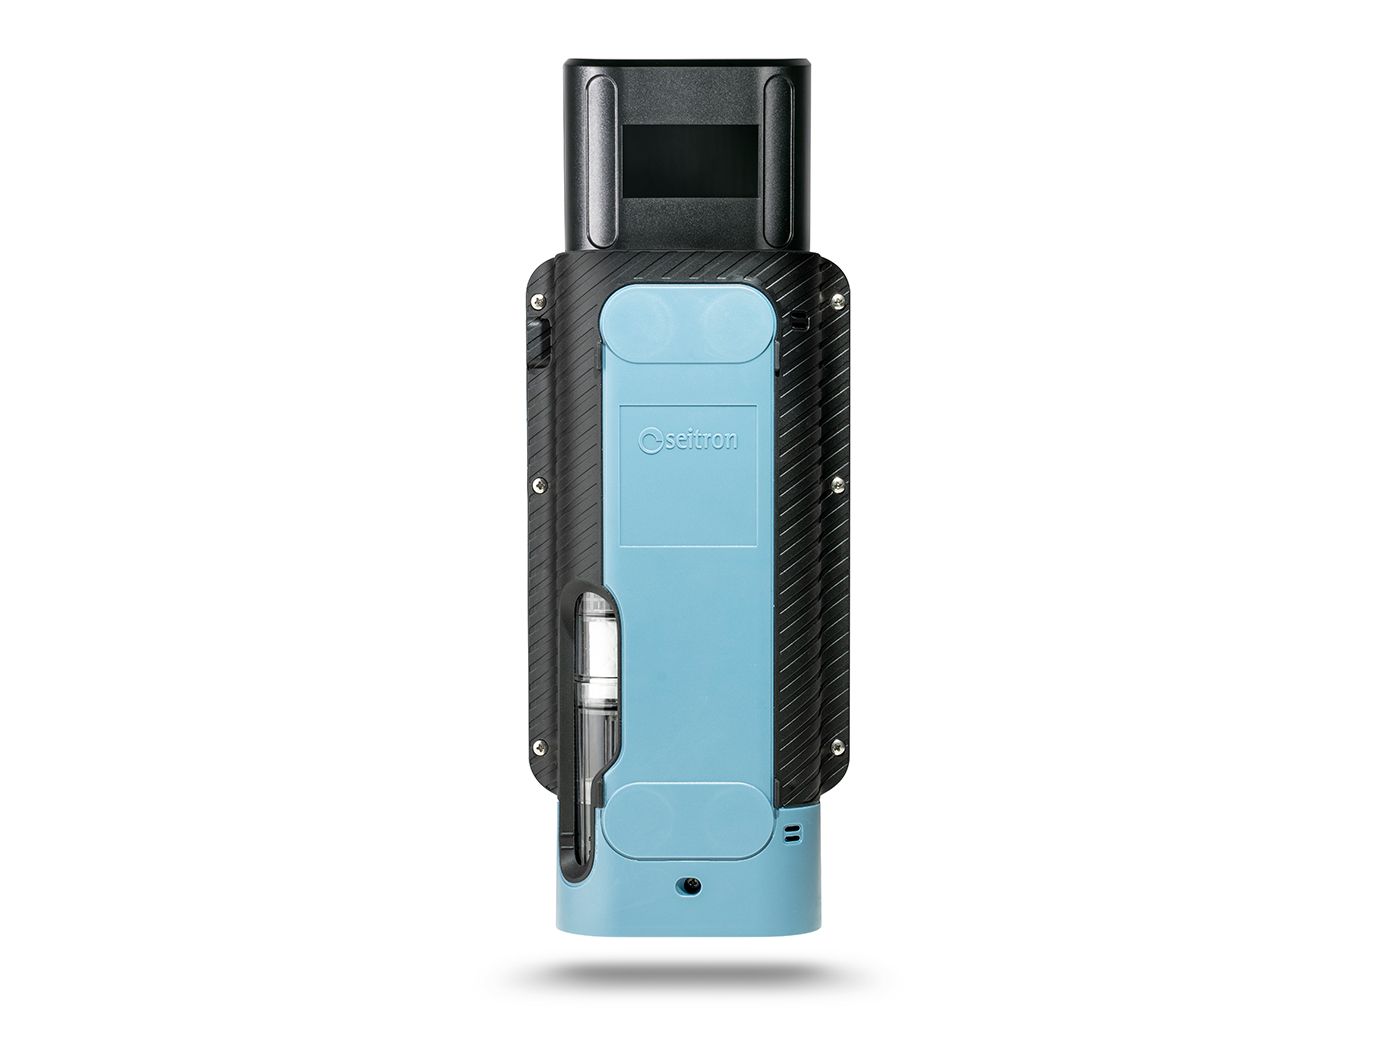 Seitron Novo 2-P analizzatore portatile di combustione - fumi 02, CO con stampante integrata